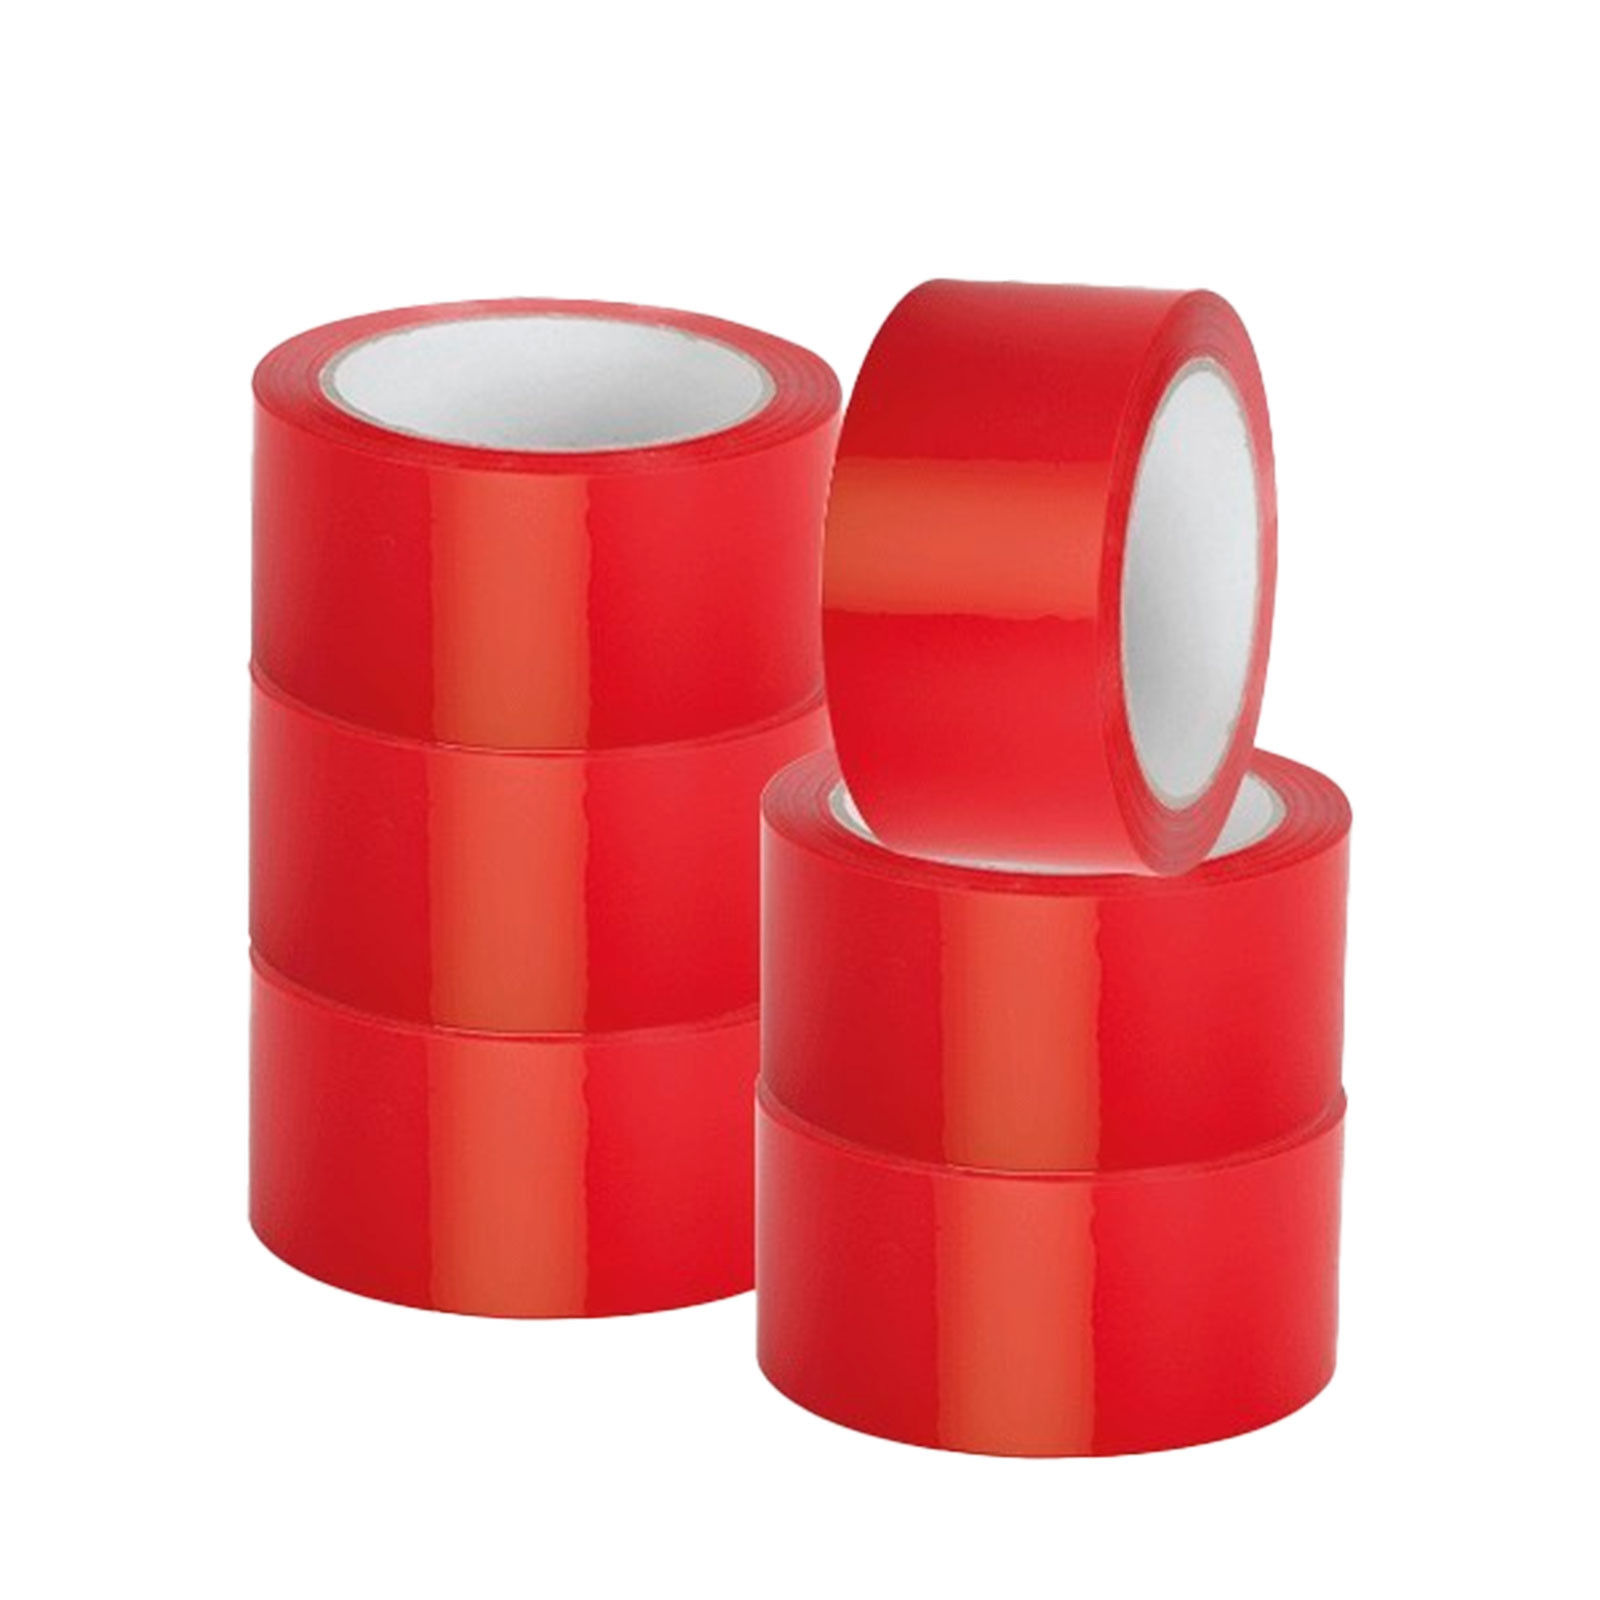 Mini-colis 6 rubans adhésifs colorés en polypropylène - Couleur fond rouge - Largeur -mm- 50 - Longueur -m- 66 - 